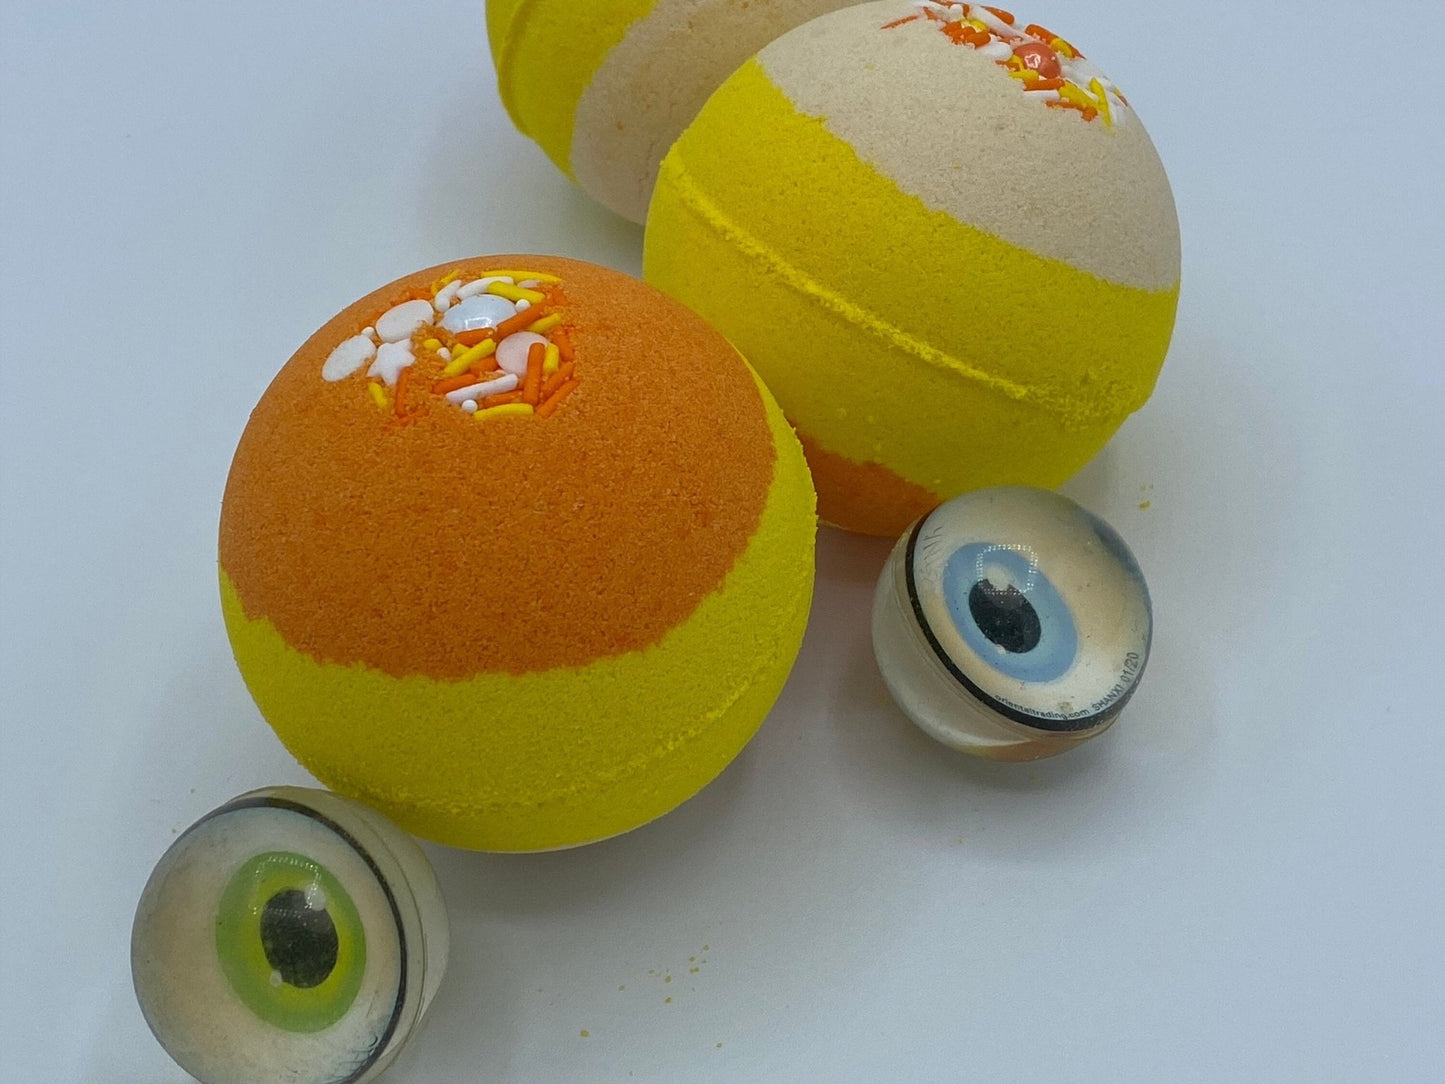 Candy Corn Bath Bomb with Toy Eyeball Inside - Berwyn Betty's Bath & Body Shop